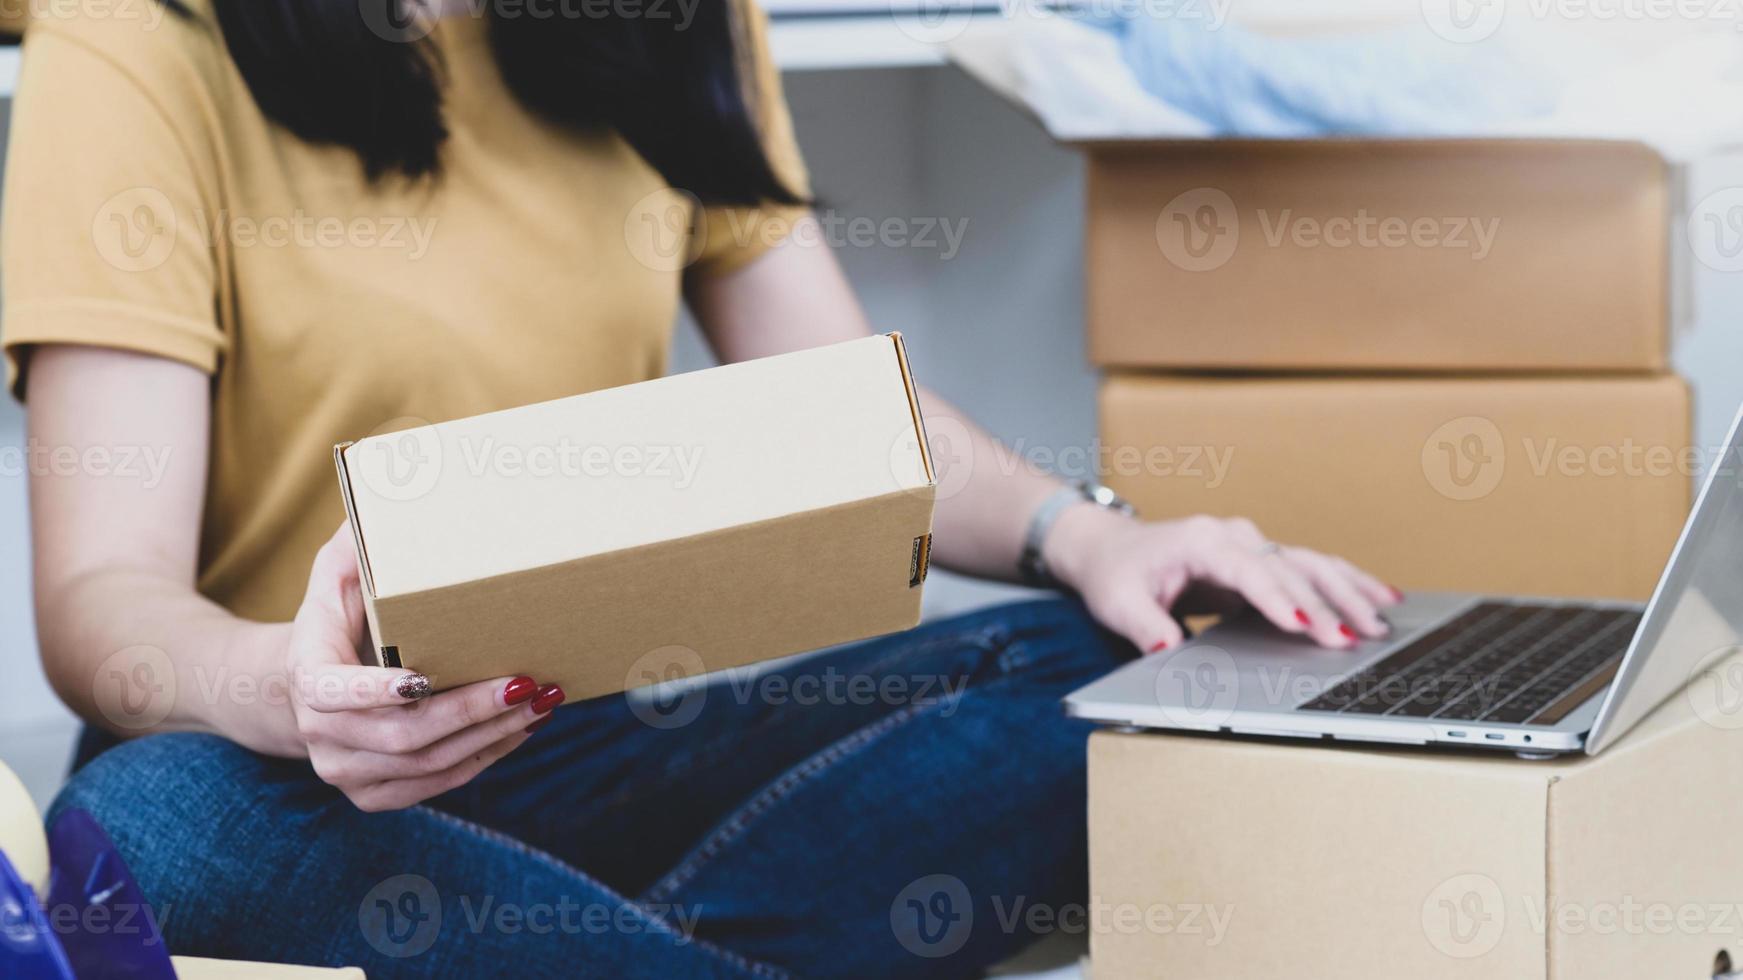 vrouw die pakketdozen vasthoudt en laptop gebruikt, producten online verkoopt. foto